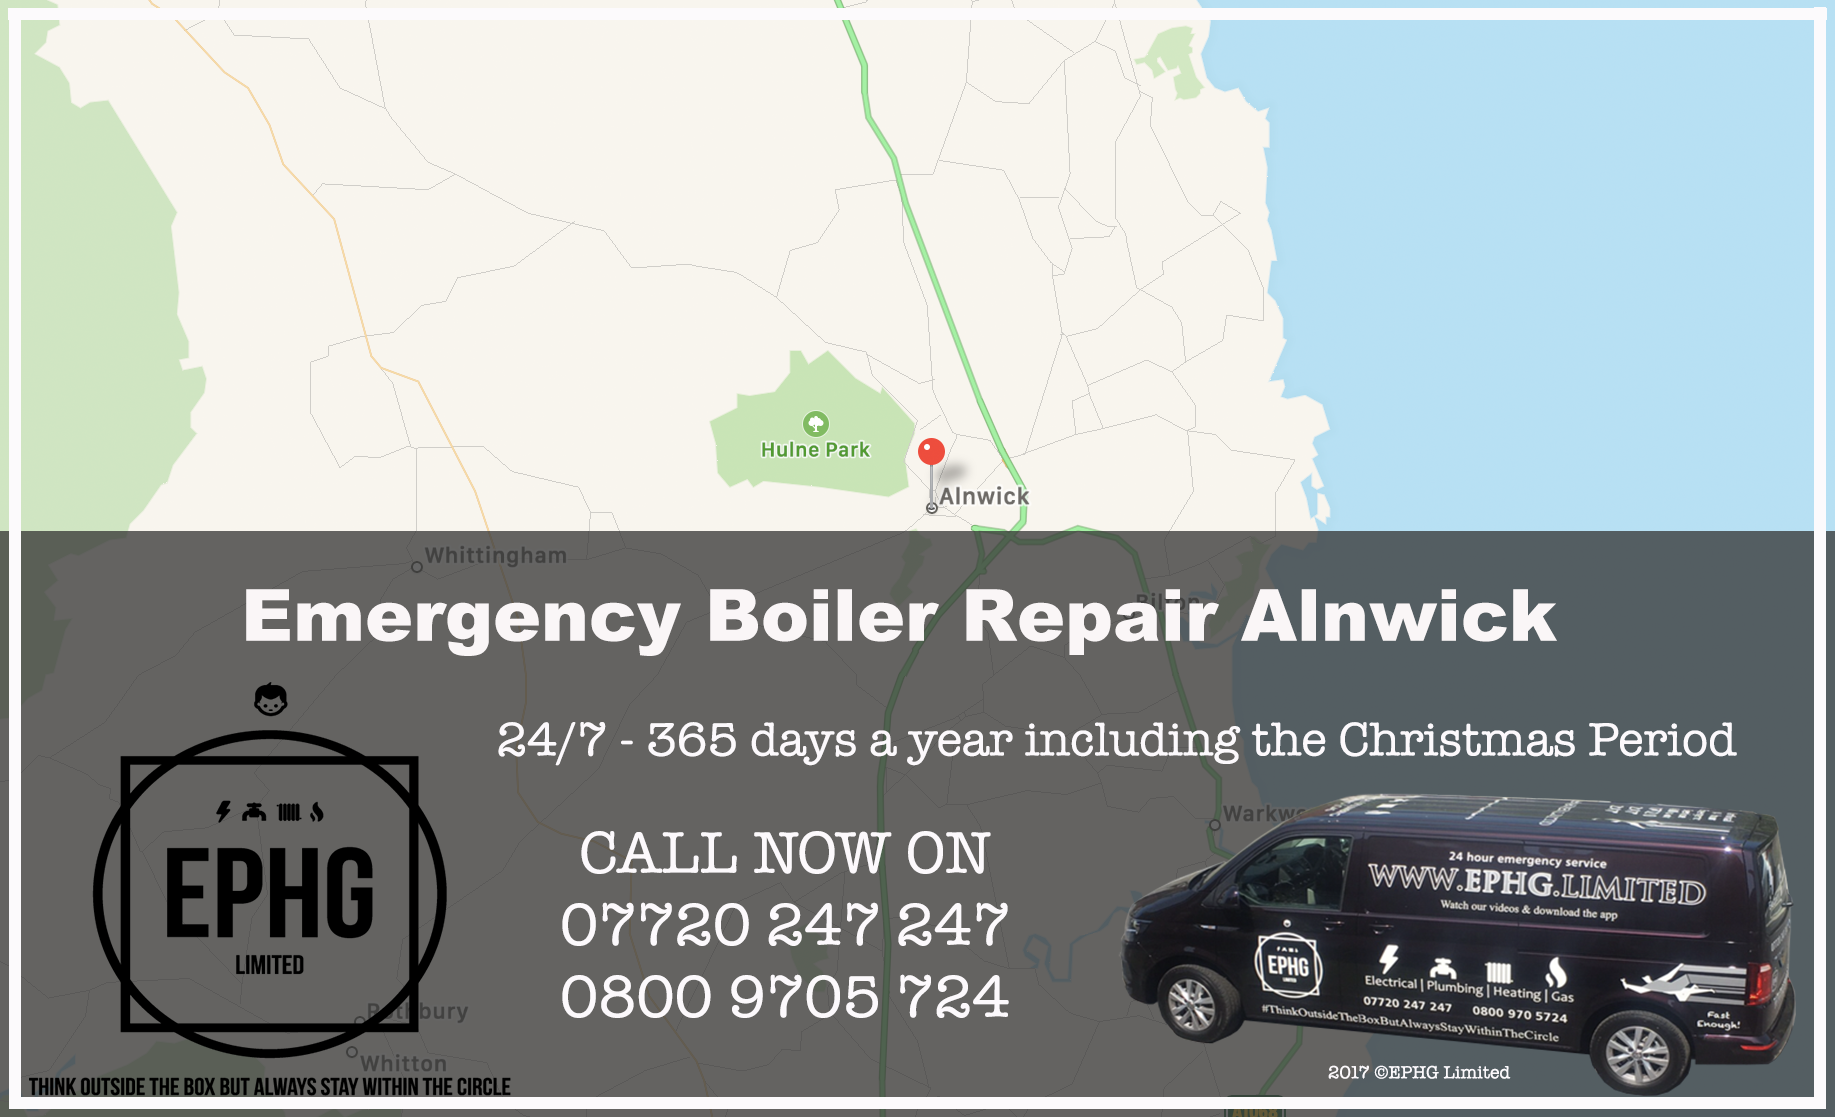 24 Hour Emergency Boiler Repair Alnwick